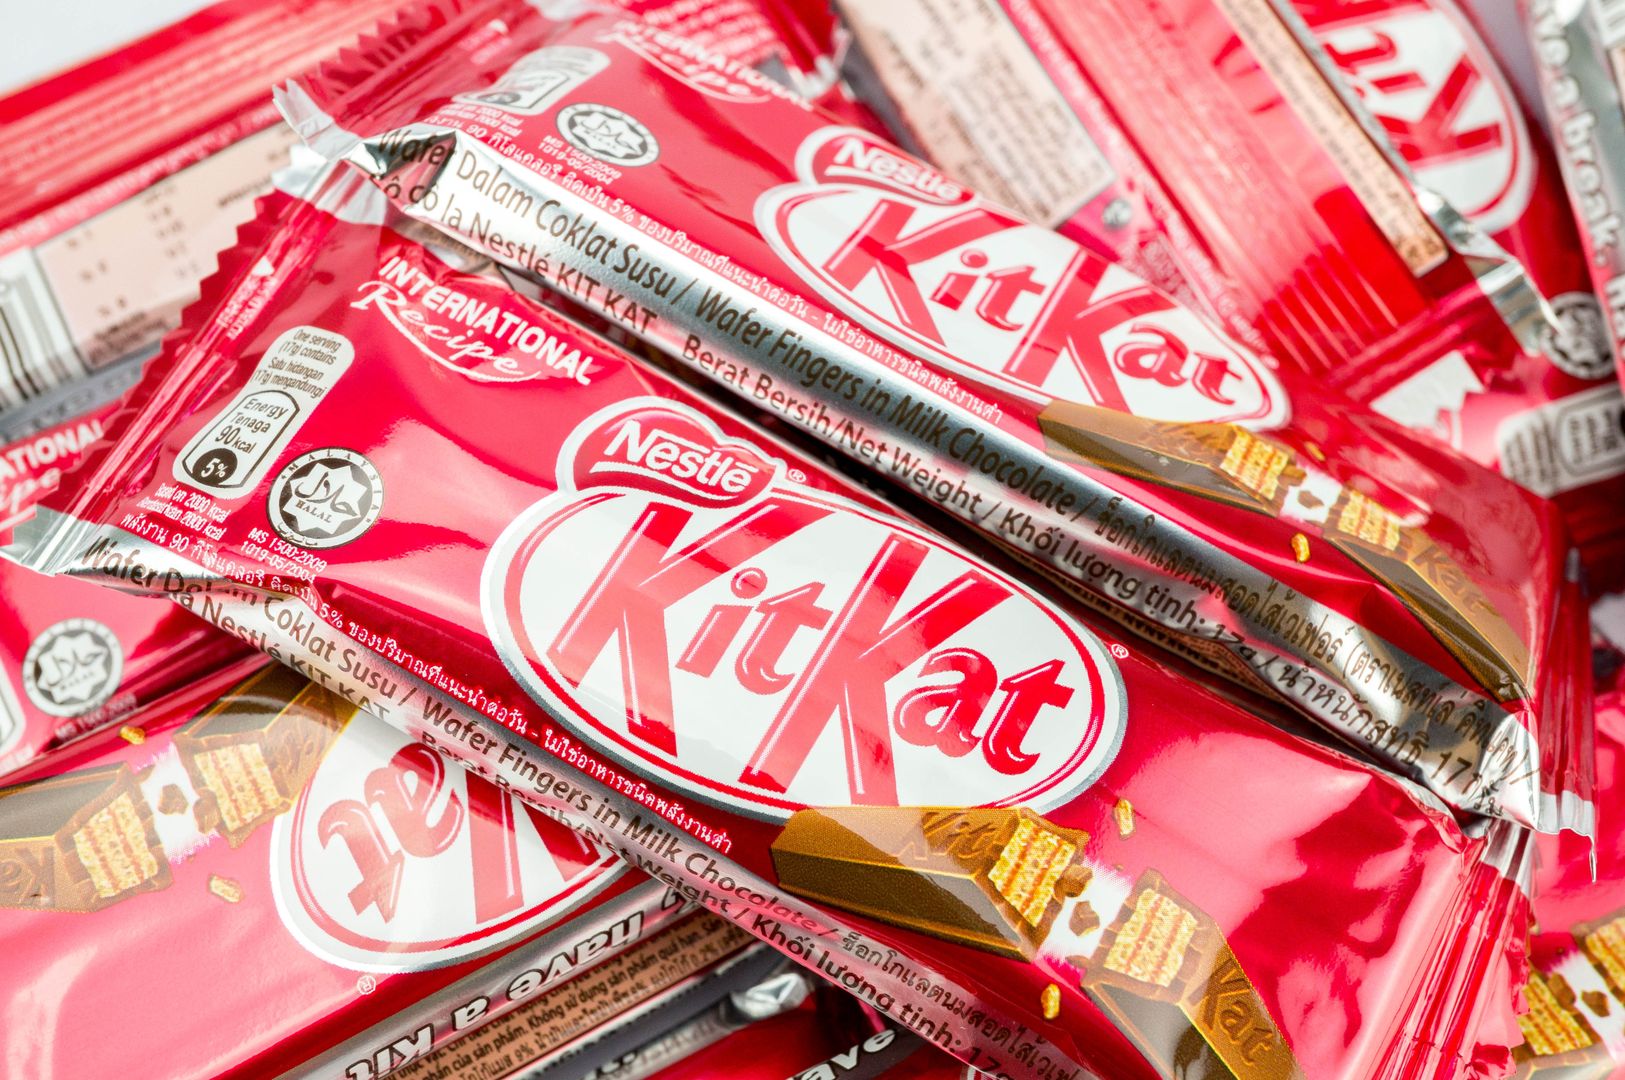 Tajemnica KitKata rozwiązana. Wiemy, co tak chrupie